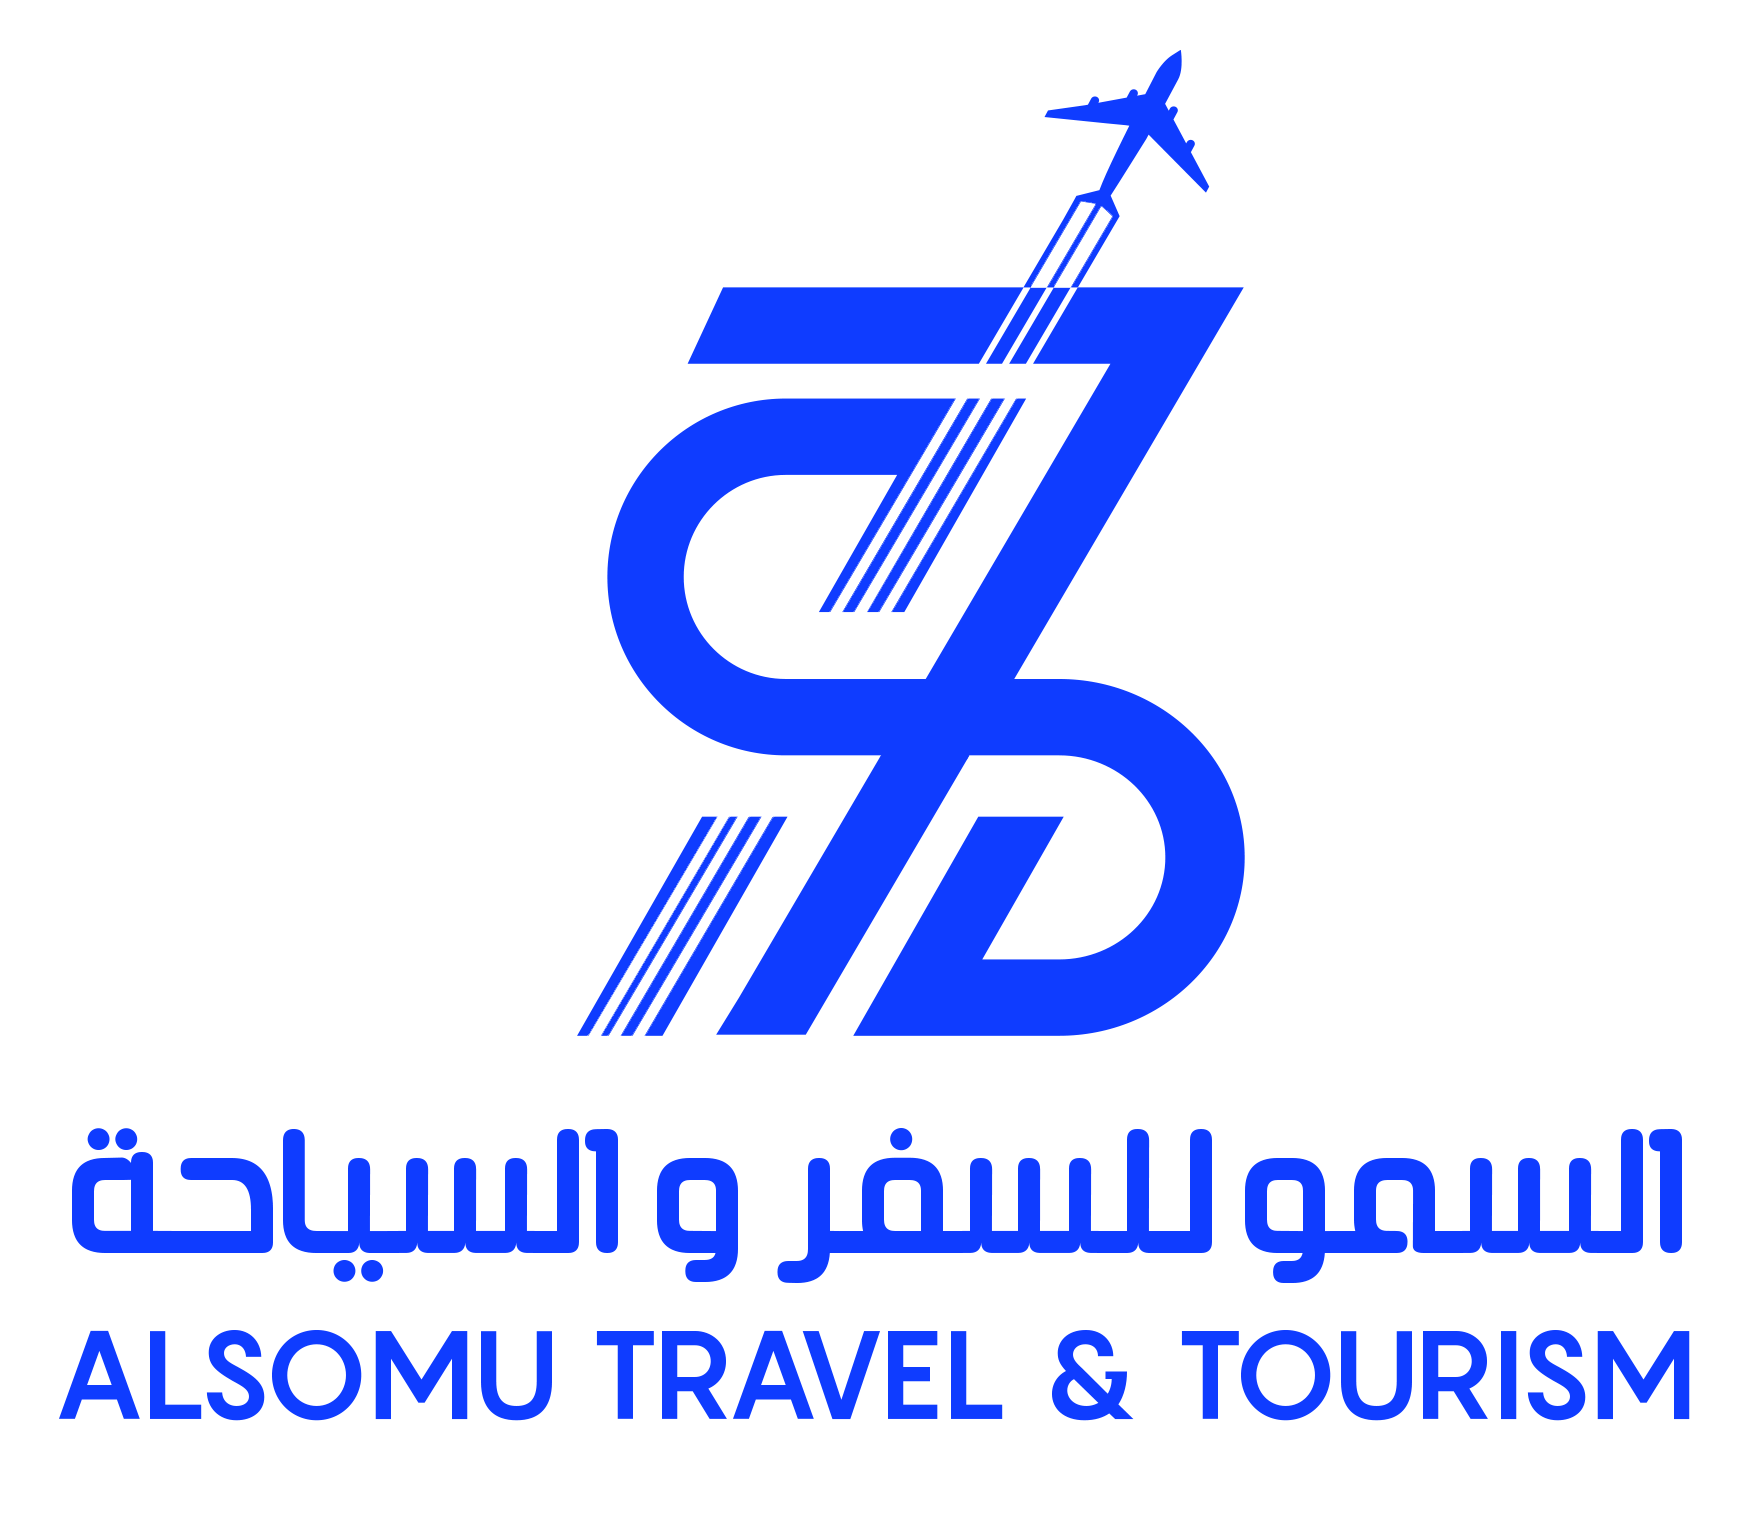 Al-somu Travel Agency